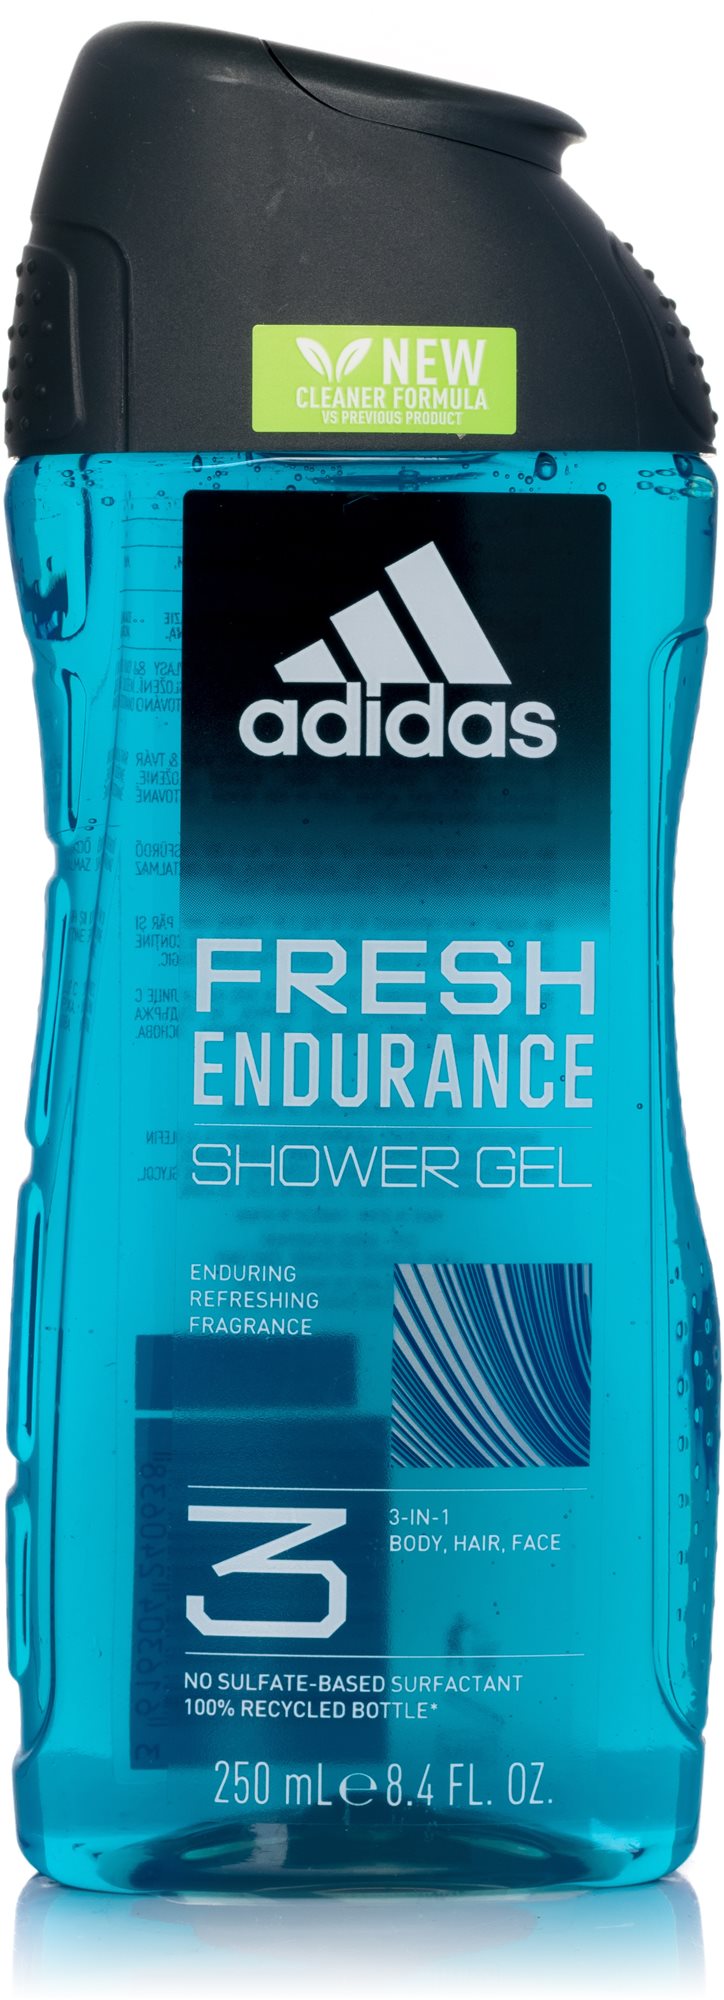 ADIDAS Fresh Endurance Shower Gel 3in1 250 ml